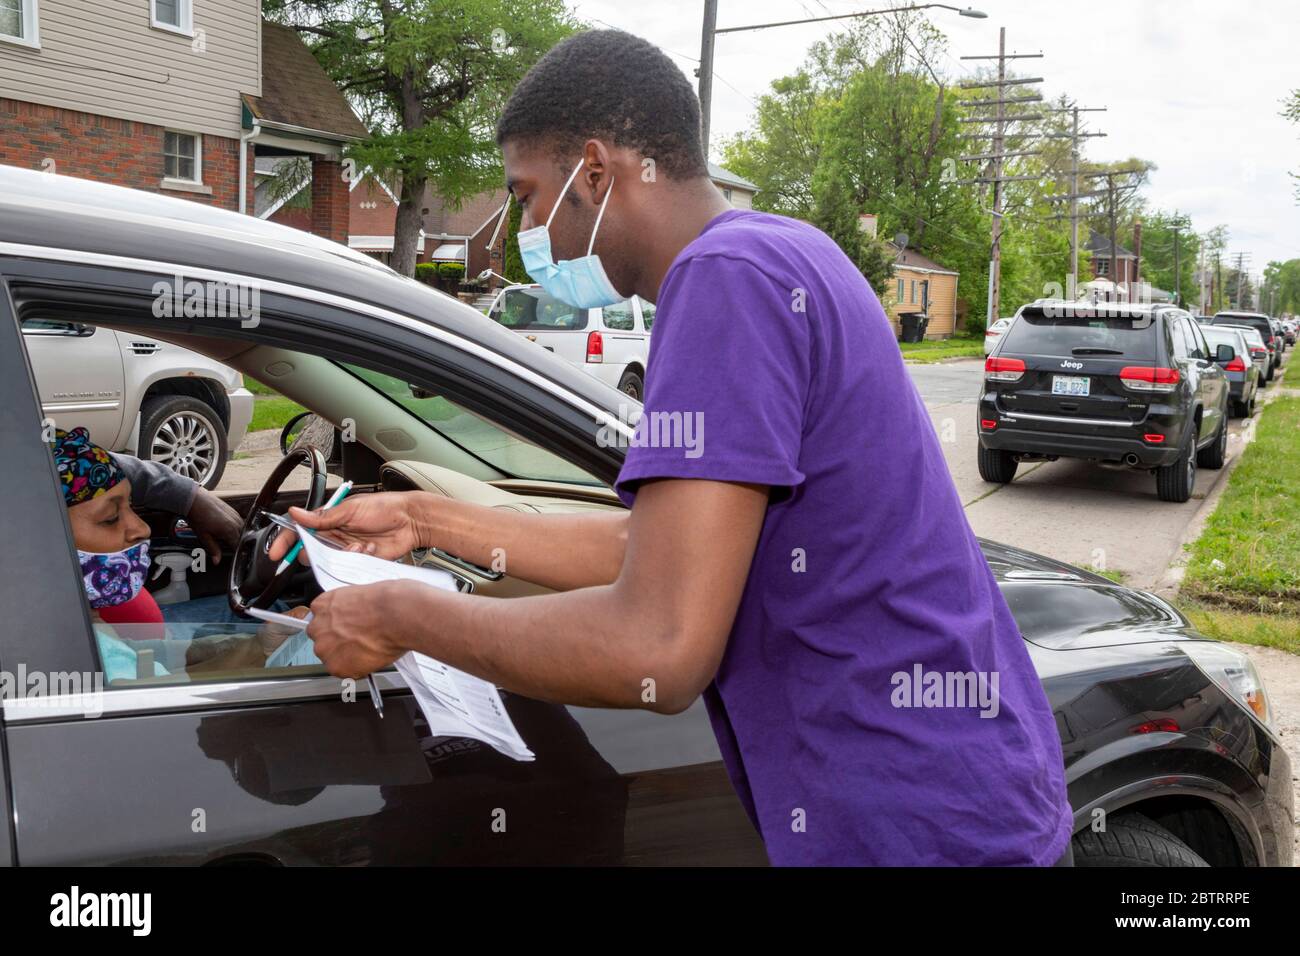 Detroit, Michigan - i volontari registrano le persone per votare quando arrivano per una distribuzione gratuita di cibo durante la pandemia del coronavirus. Foto Stock